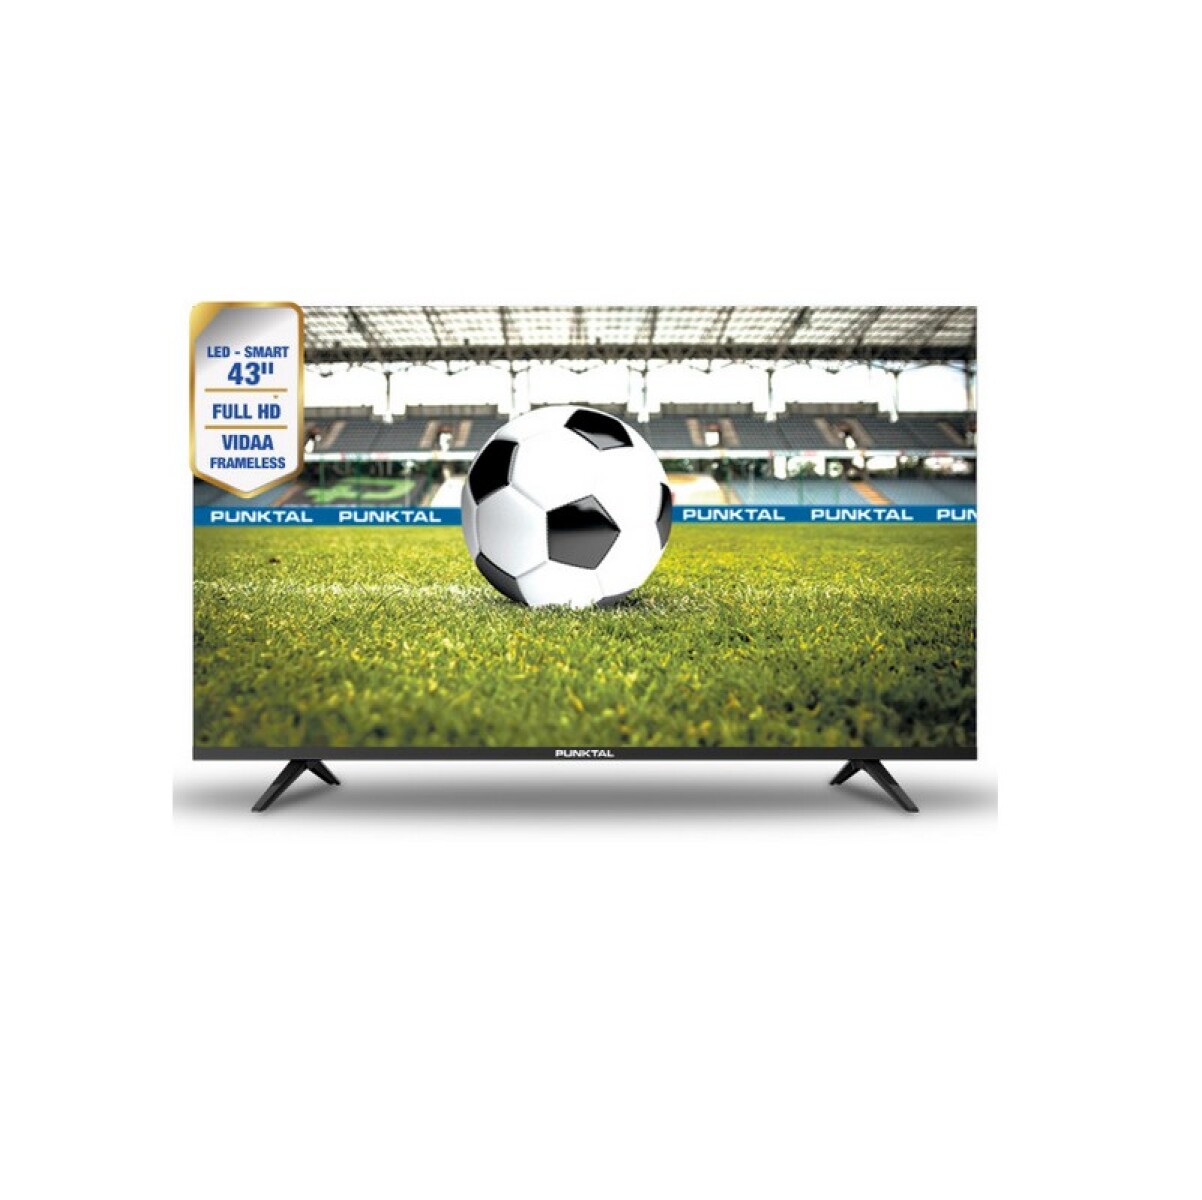 TV PUNKTAL 43" LED SMART TV FULL HD 